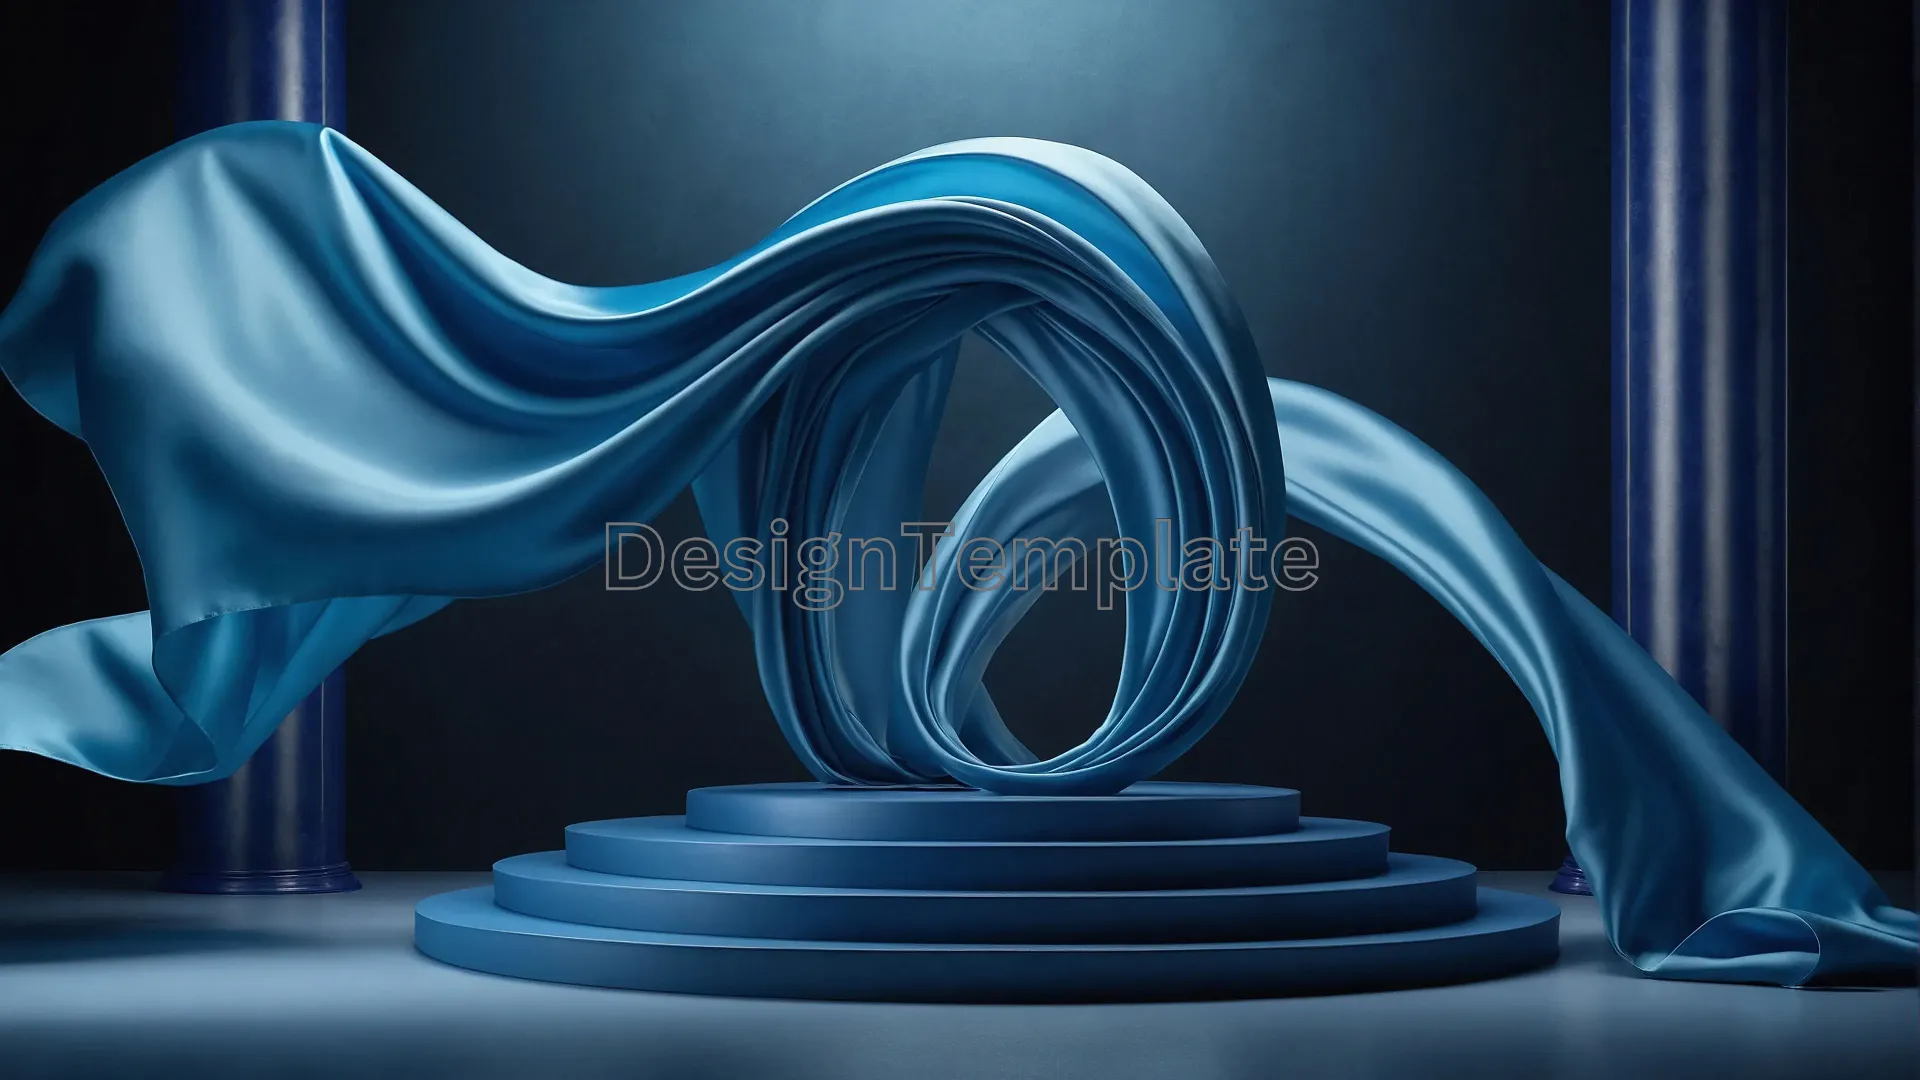 Silk Fabric Enveloping 3D Podium Image image